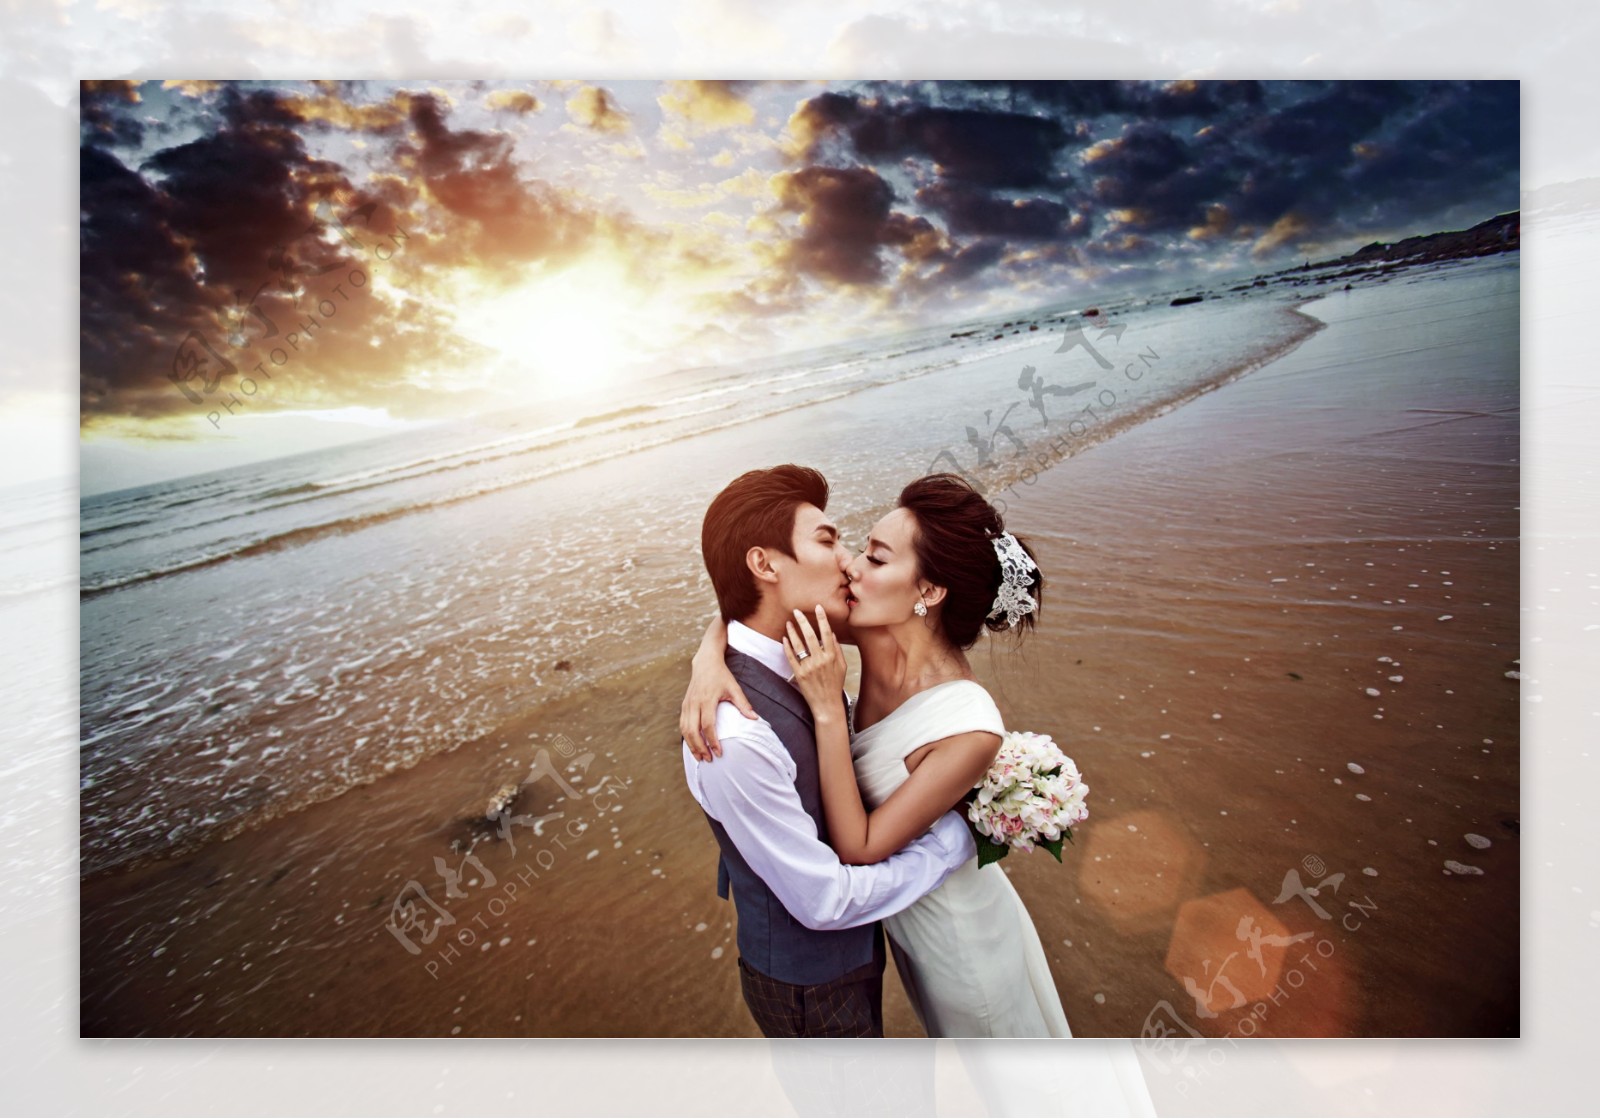 沙滩上接吻的婚纱情侣图片